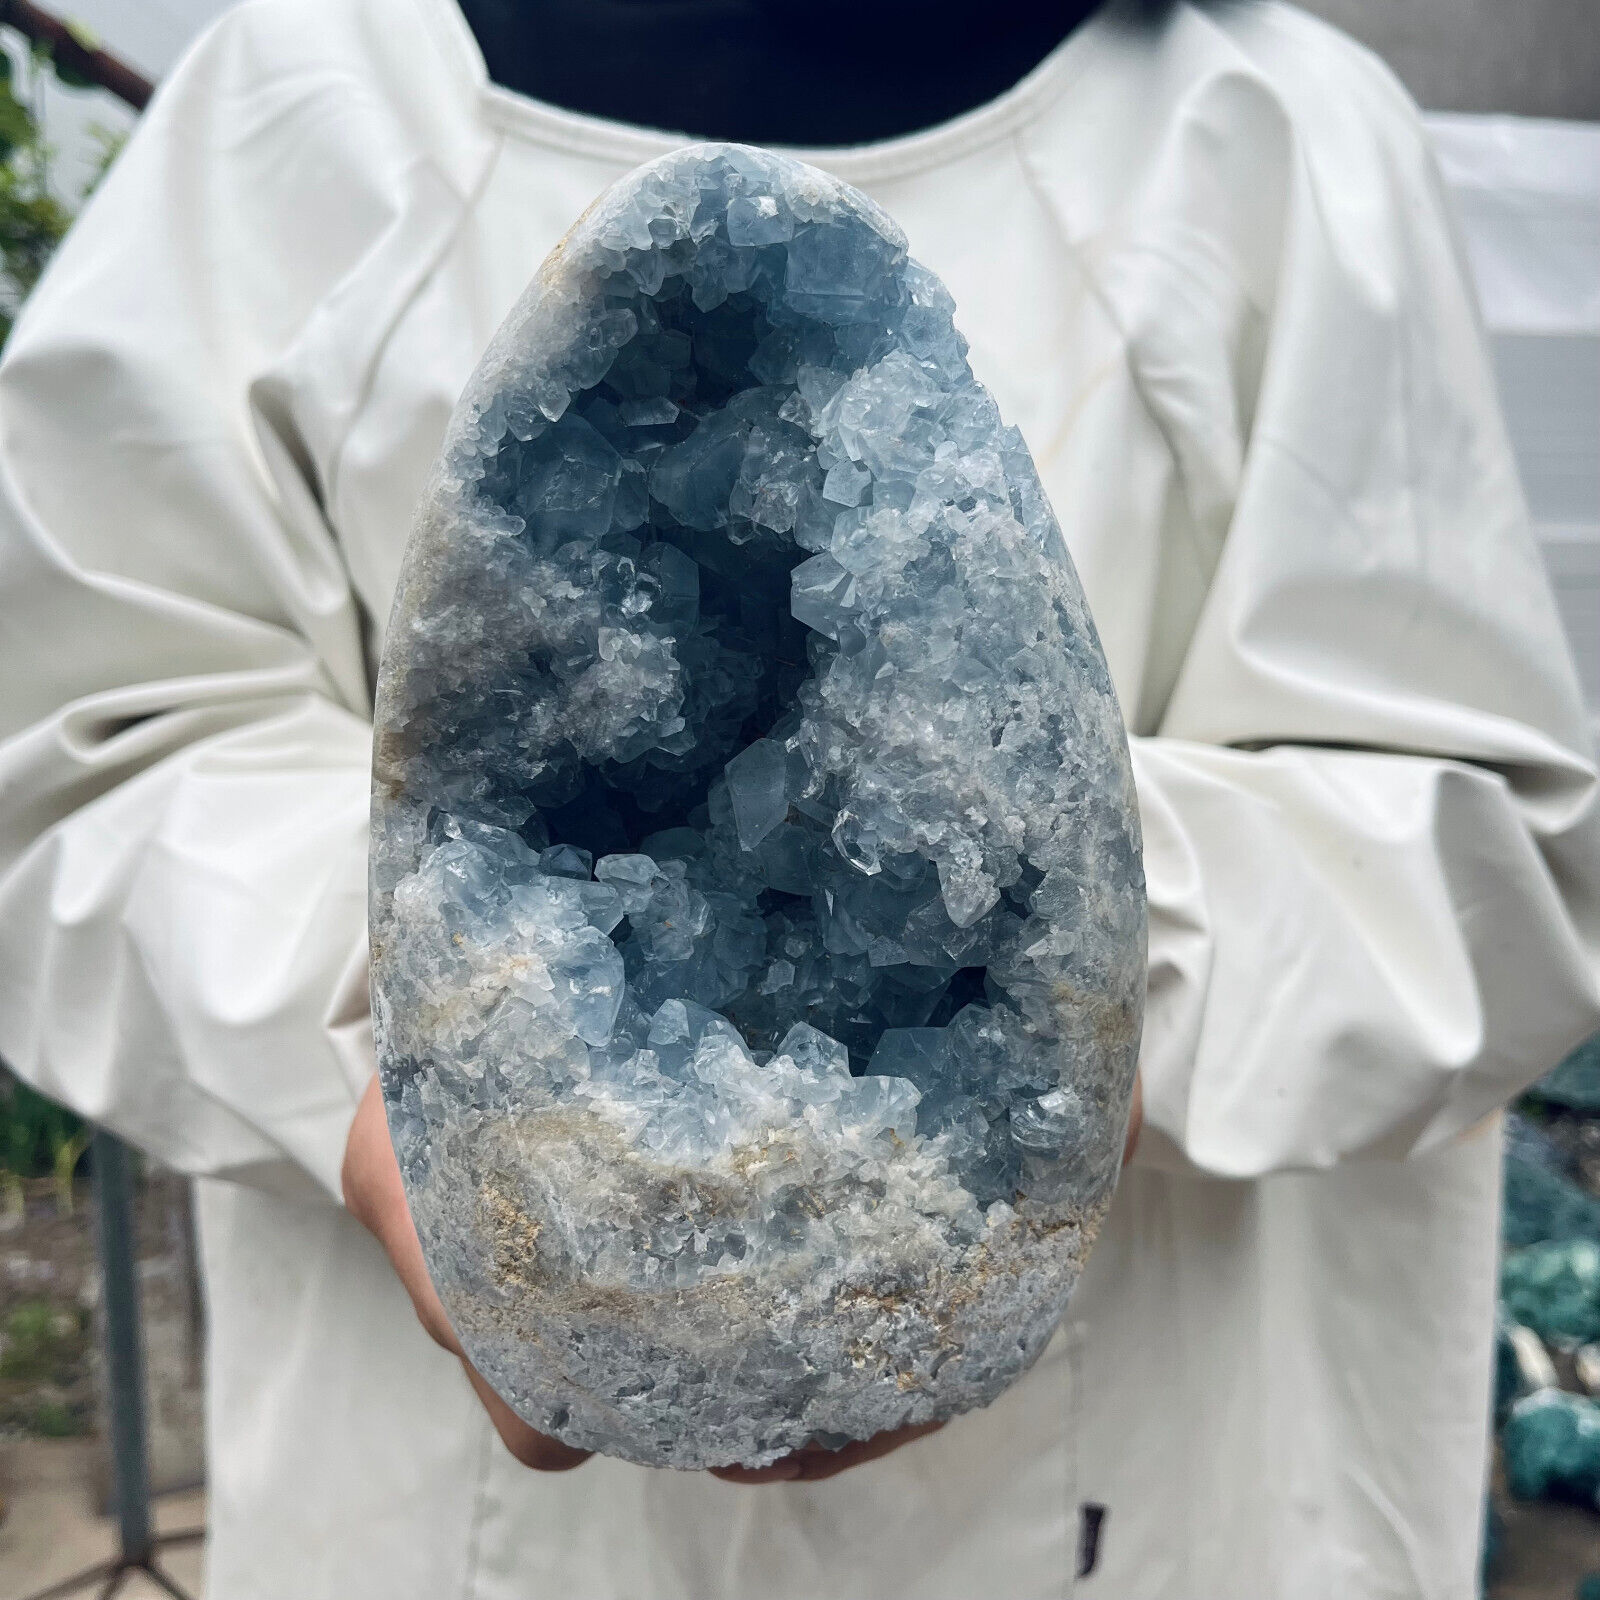 5.6lb Large Natural Blue Celestite Crystal Geode Quartz Cluster Mineral Specime